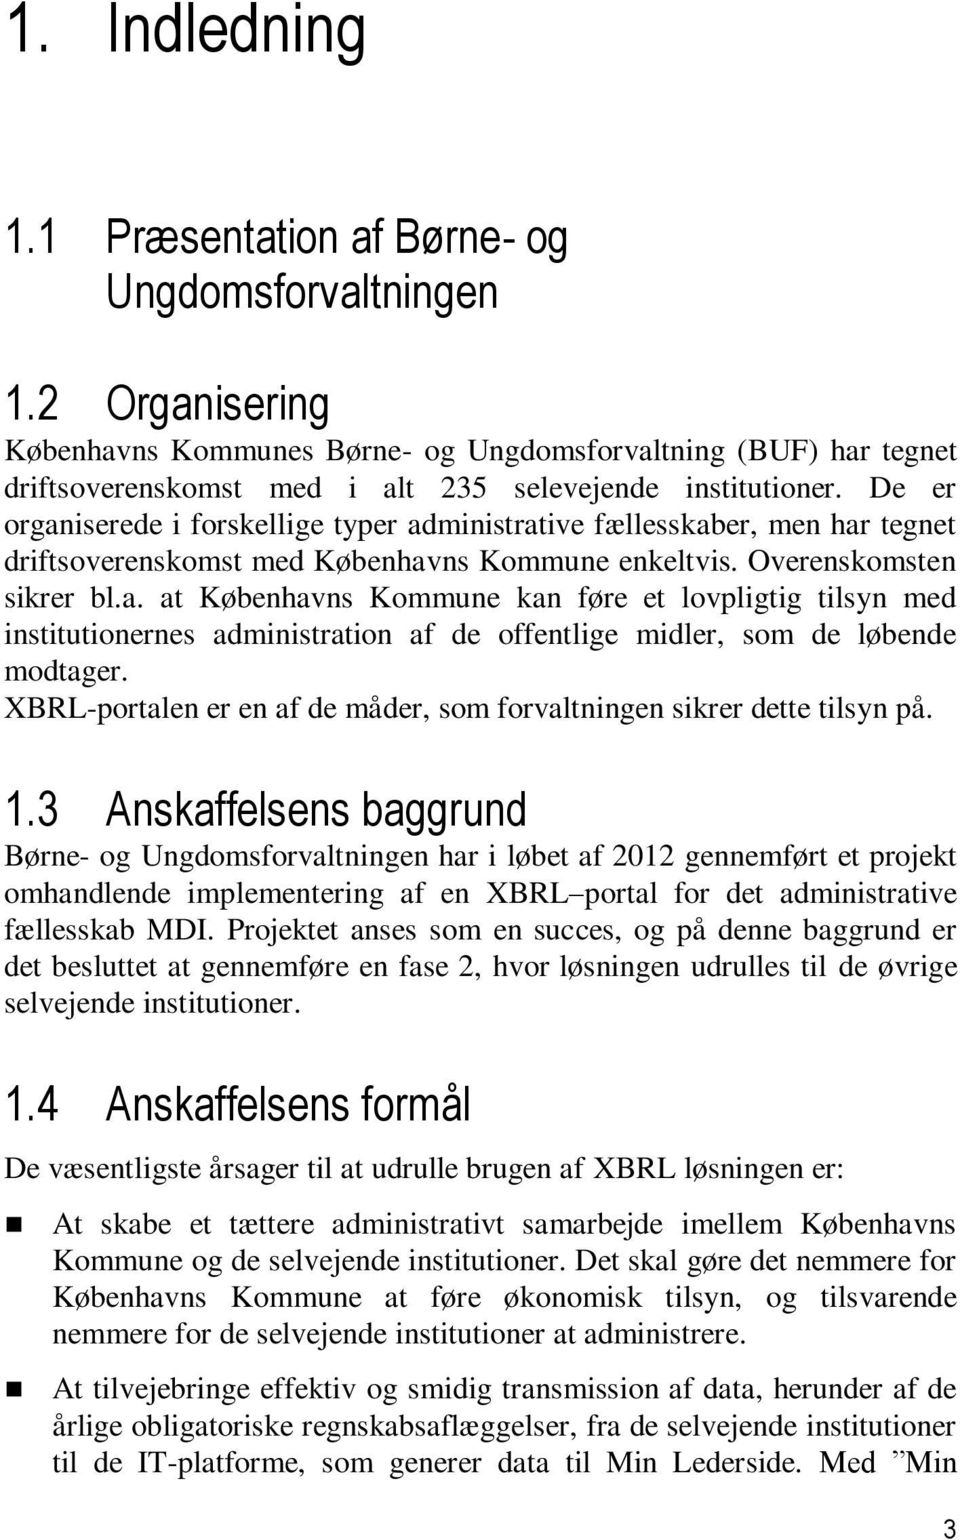 Børne- og Ungdomsforvaltningen - Københavns Kommune Udbudsbetingelser  vedrørende udbygning af eksisterende XBRL-løsning i form af udbud af - PDF  Free Download